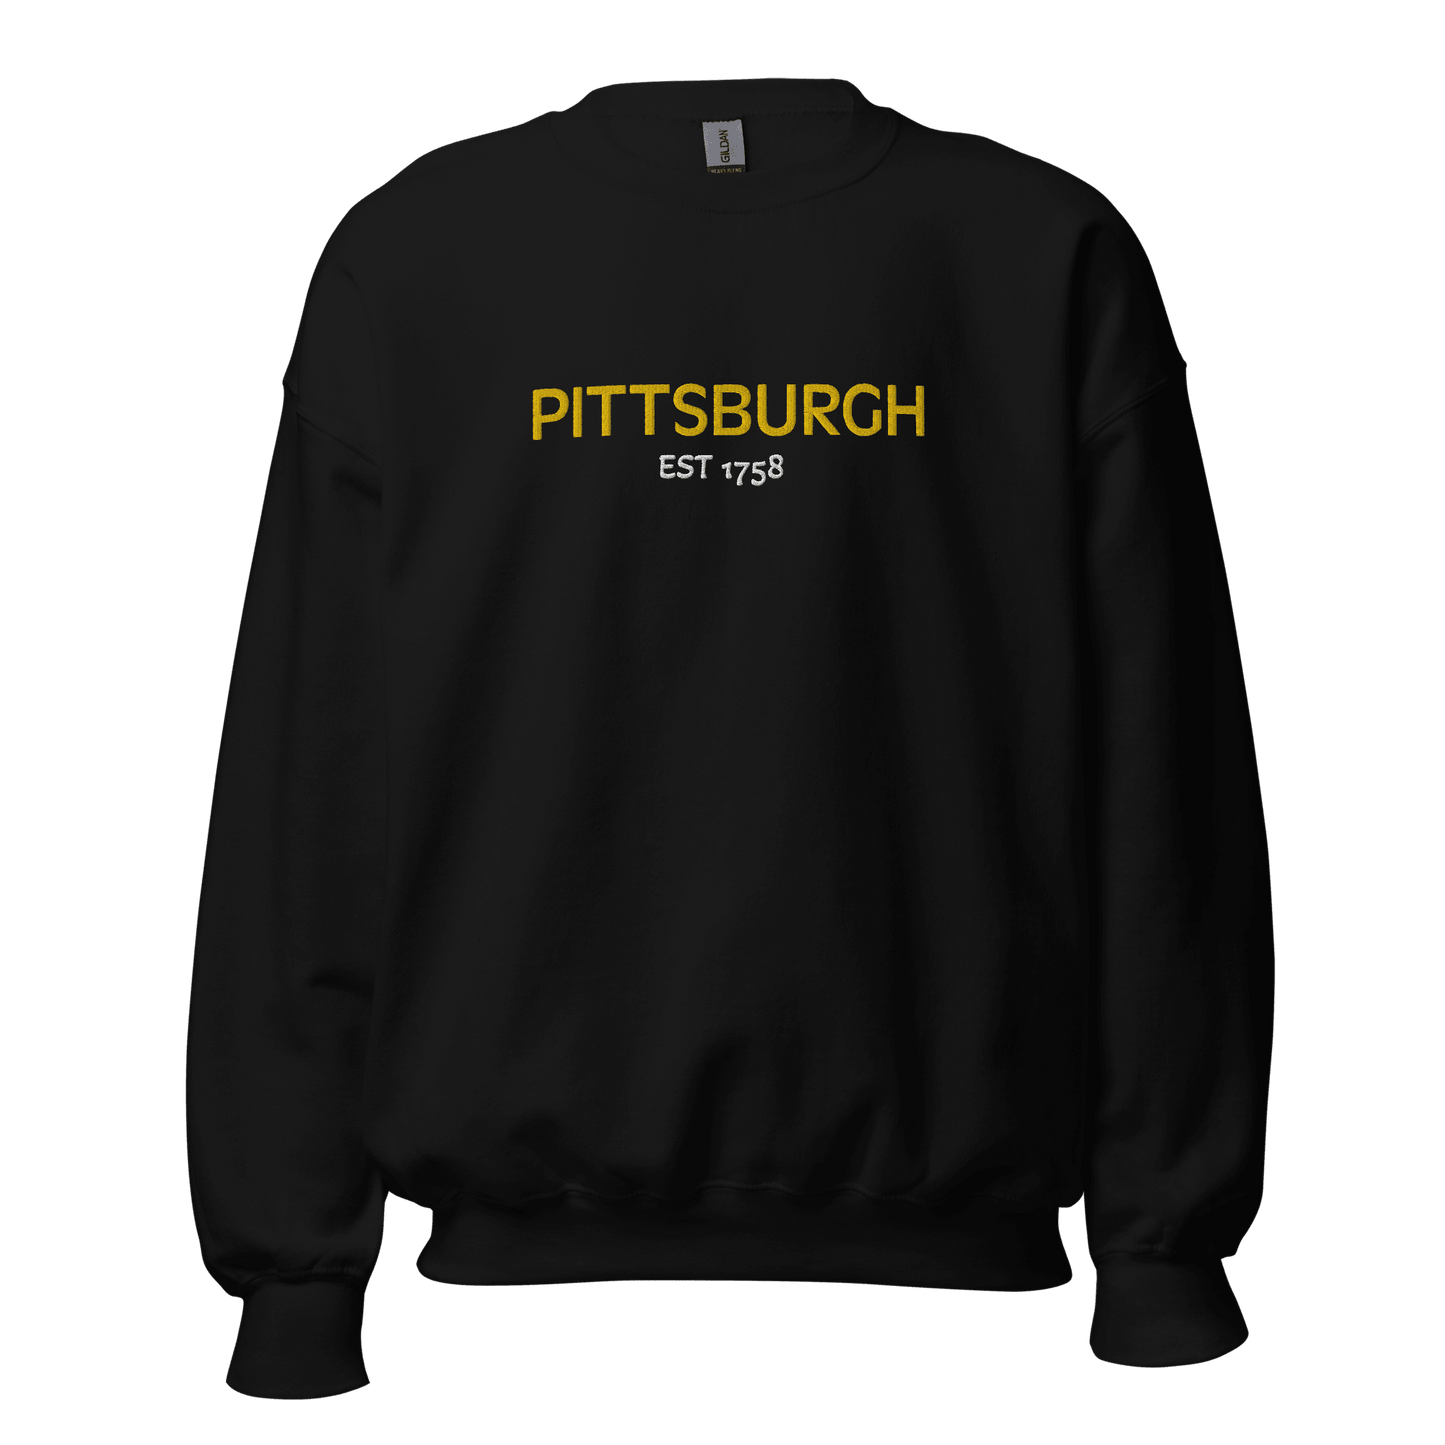 Embroidered Pittsburgh EST 1758 Sweatshirt Yinzergear Black S 